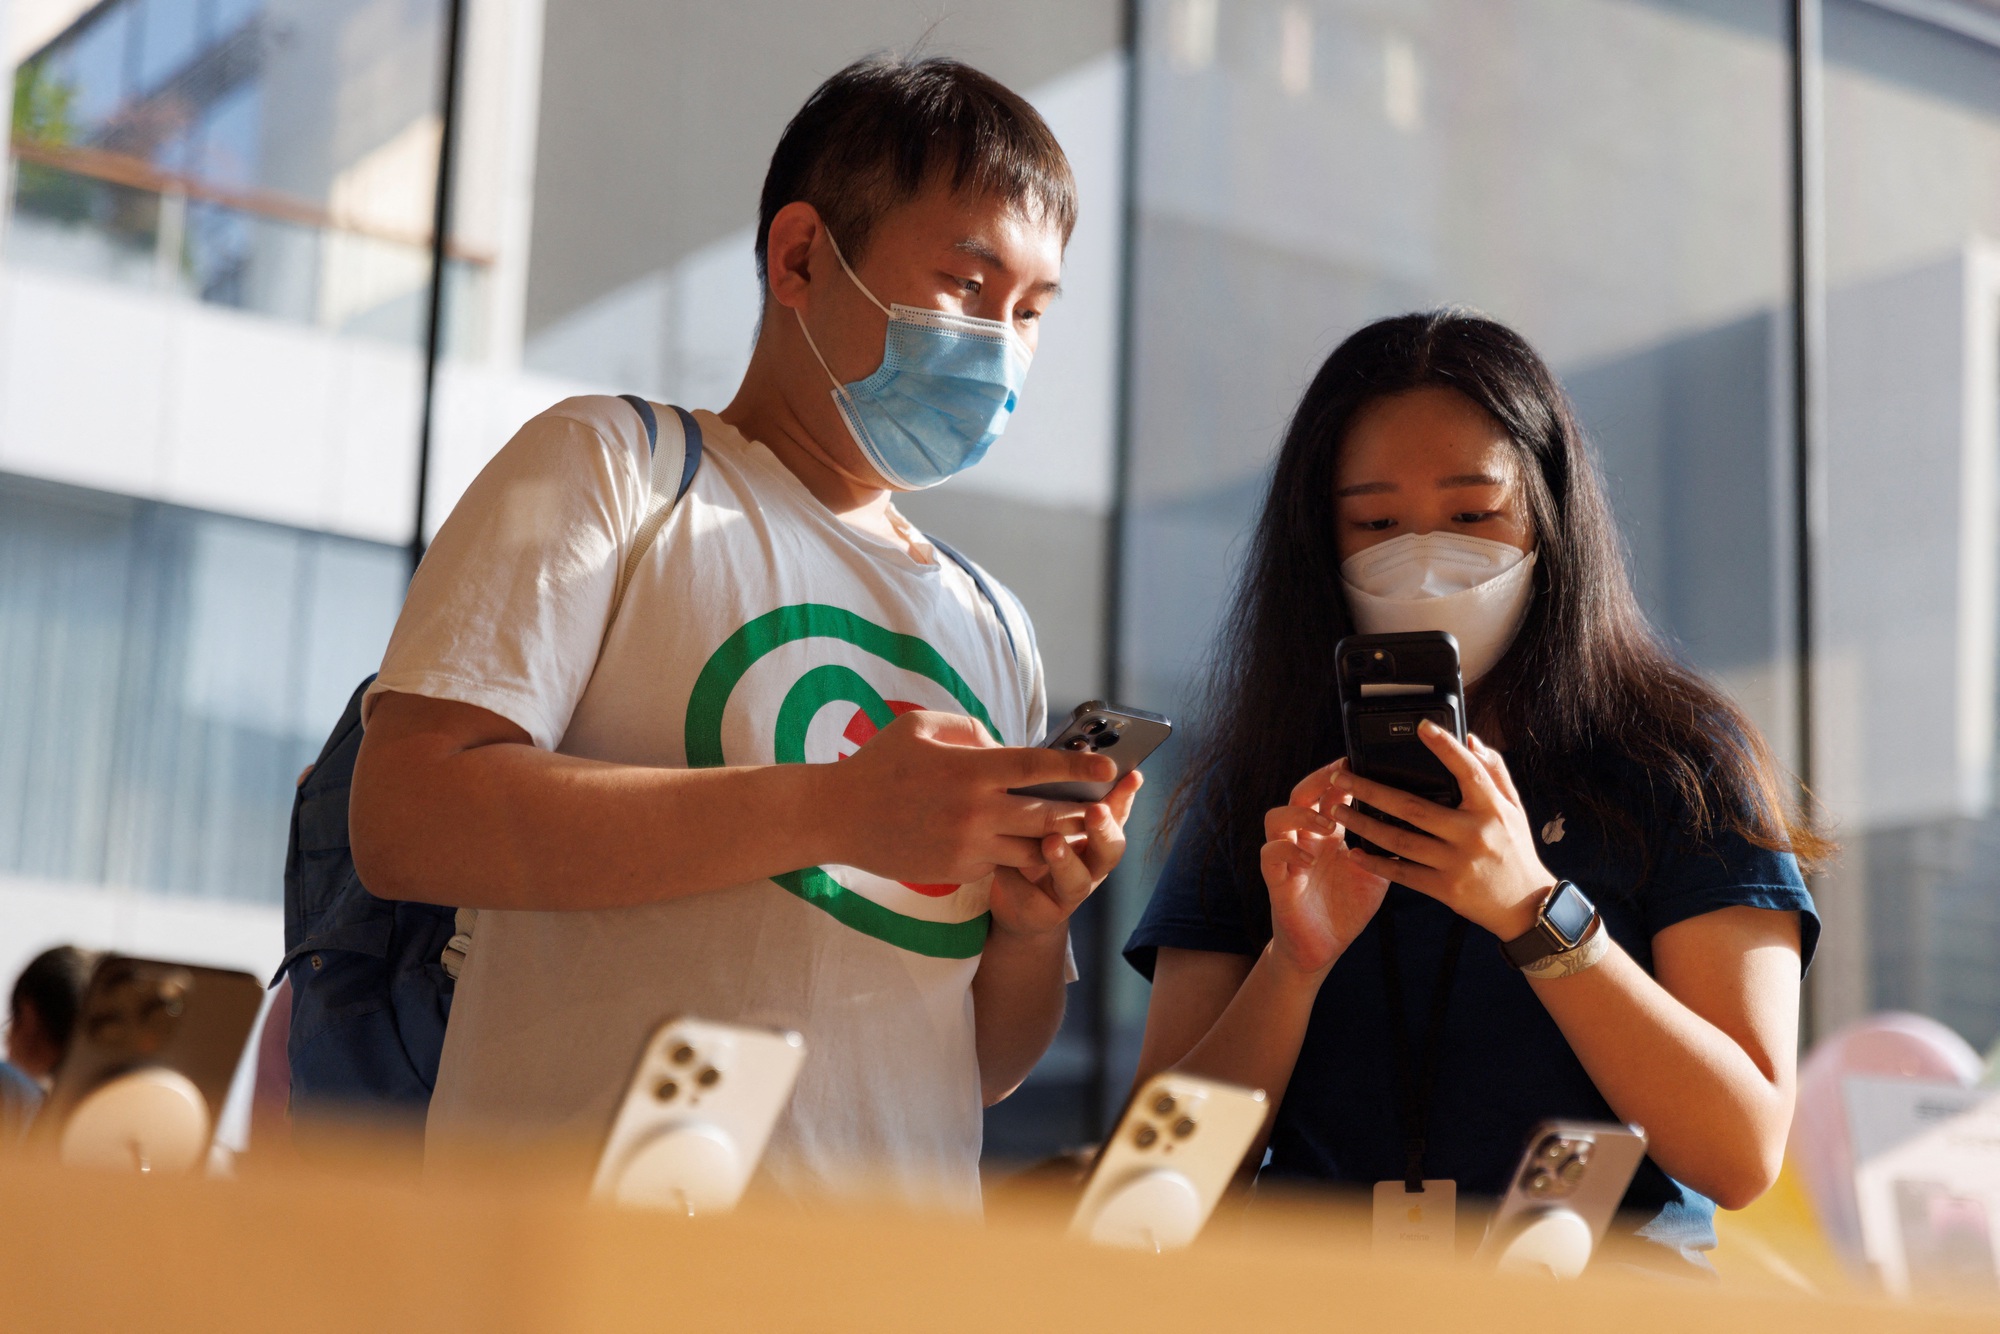  Trung Quốc nới lệnh cấm iPhone trong cơ quan nhà nước - Ảnh 1.